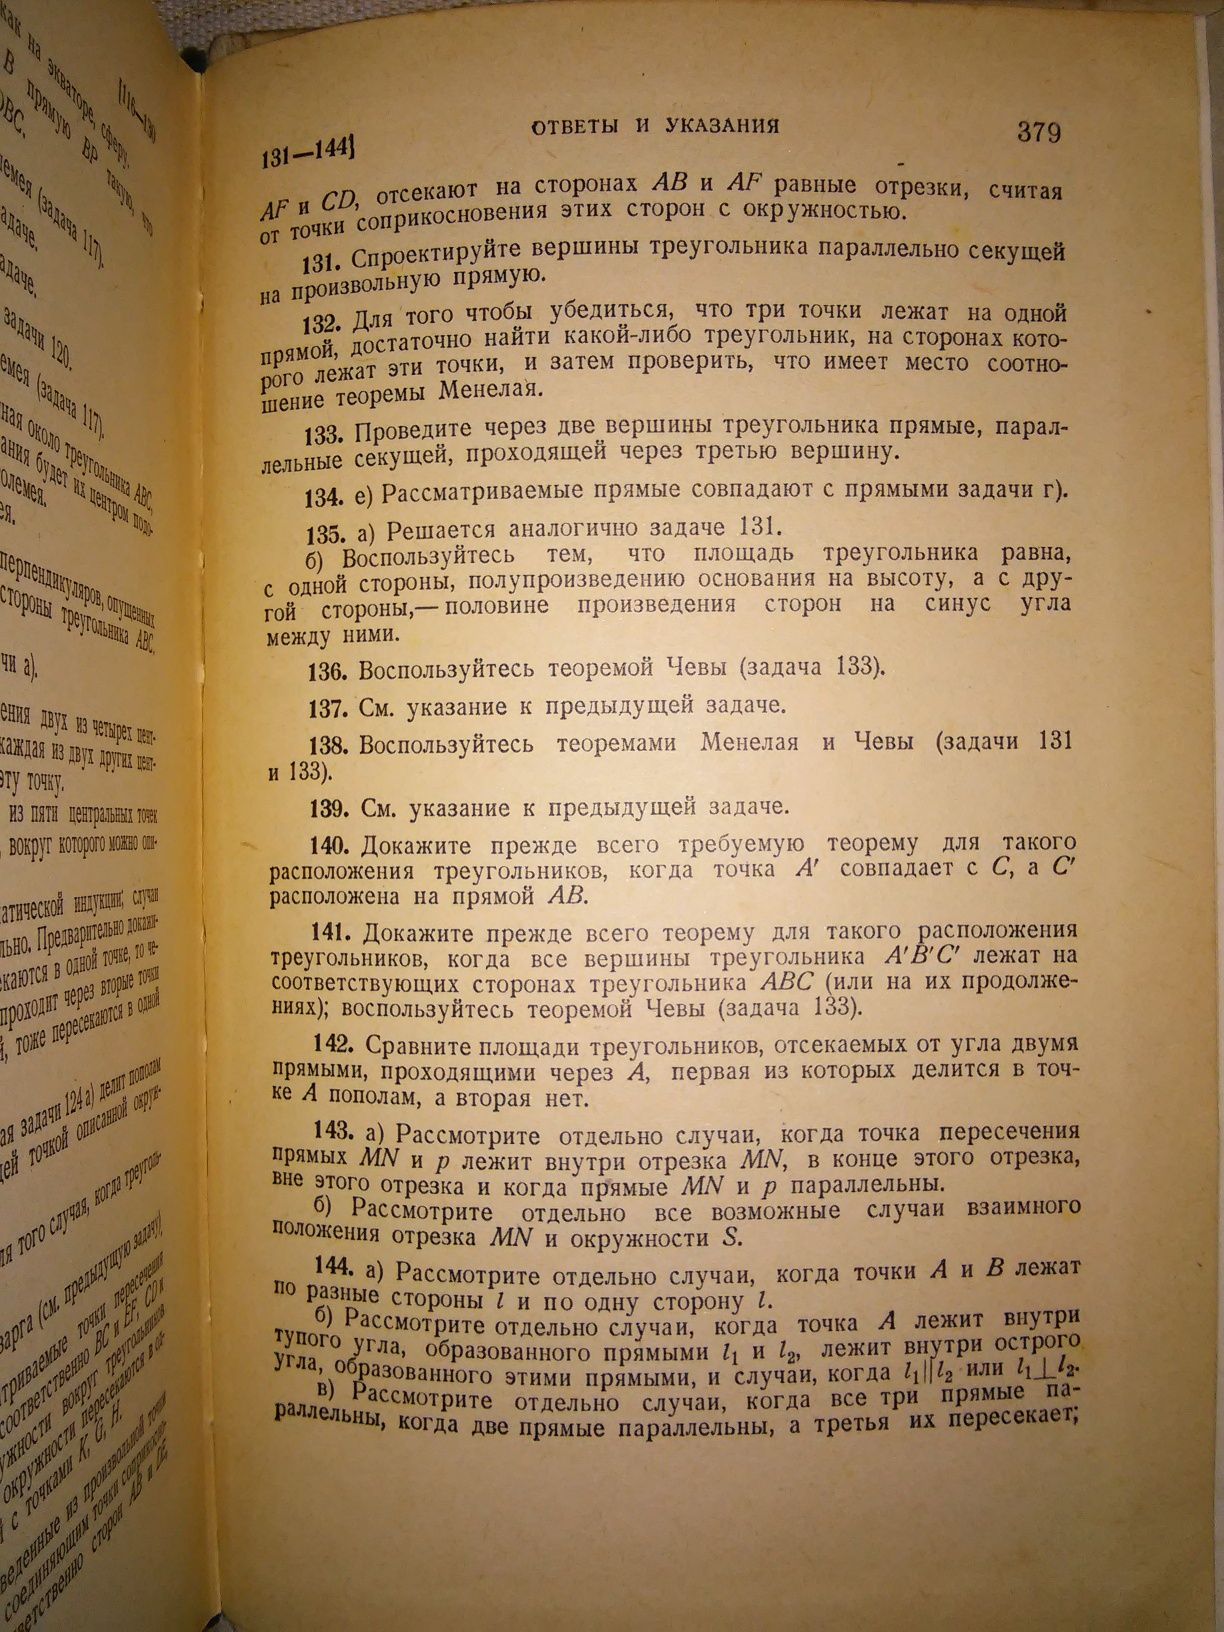 Шклярский Избранные задачи и теоремы элементарной математики 1952 р.